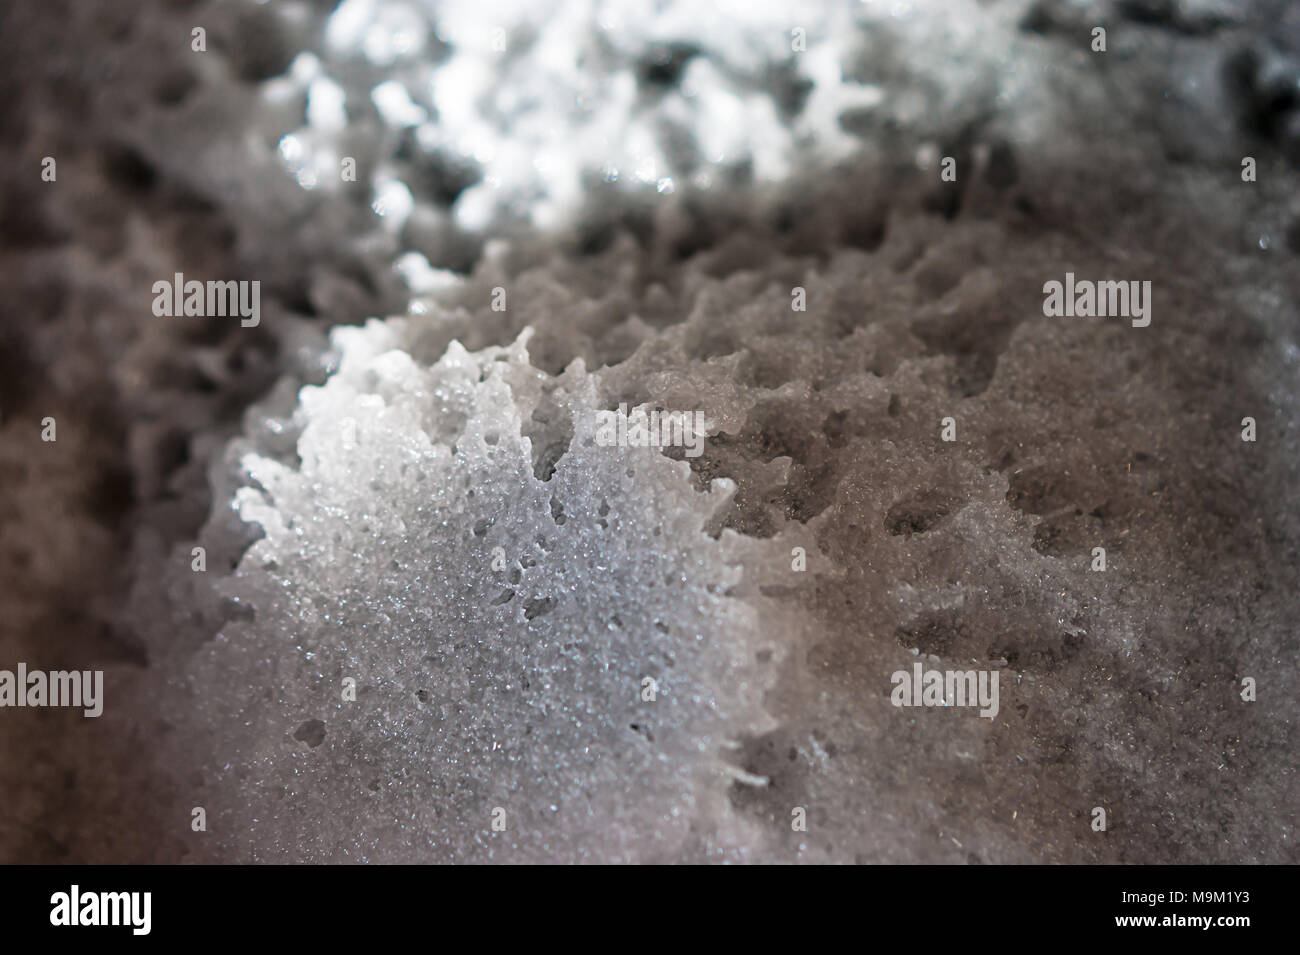 Abstrakte außerirdische Landschaft. Natron; Essig chemische Reaktion Produkt, Natriumacetat, heißes Eis. Stockfoto